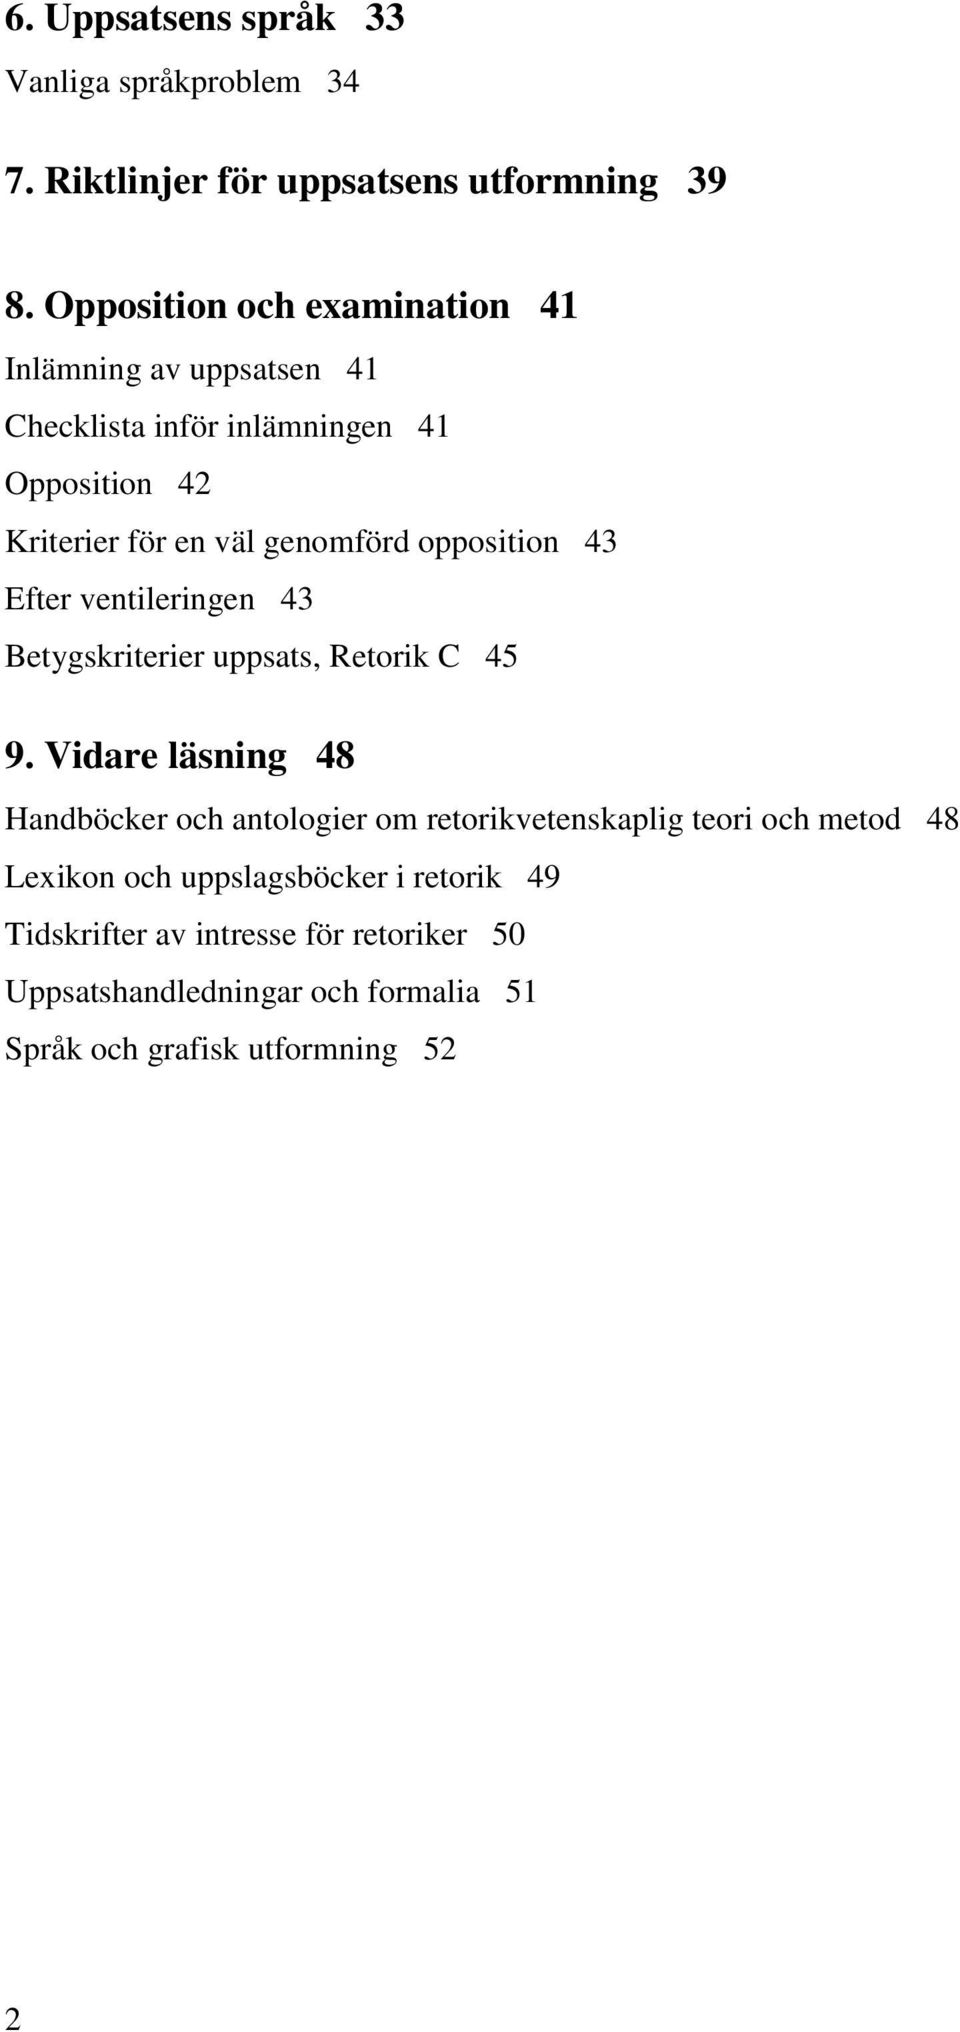 opposition 43 Efter ventileringen 43 Betygskriterier uppsats, Retorik C 45 9.